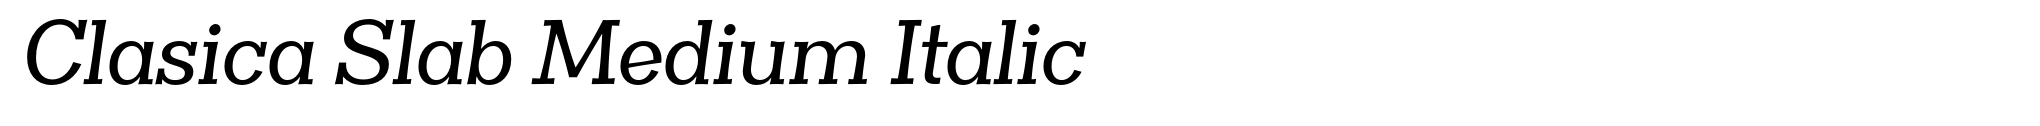 Clasica Slab Medium Italic image